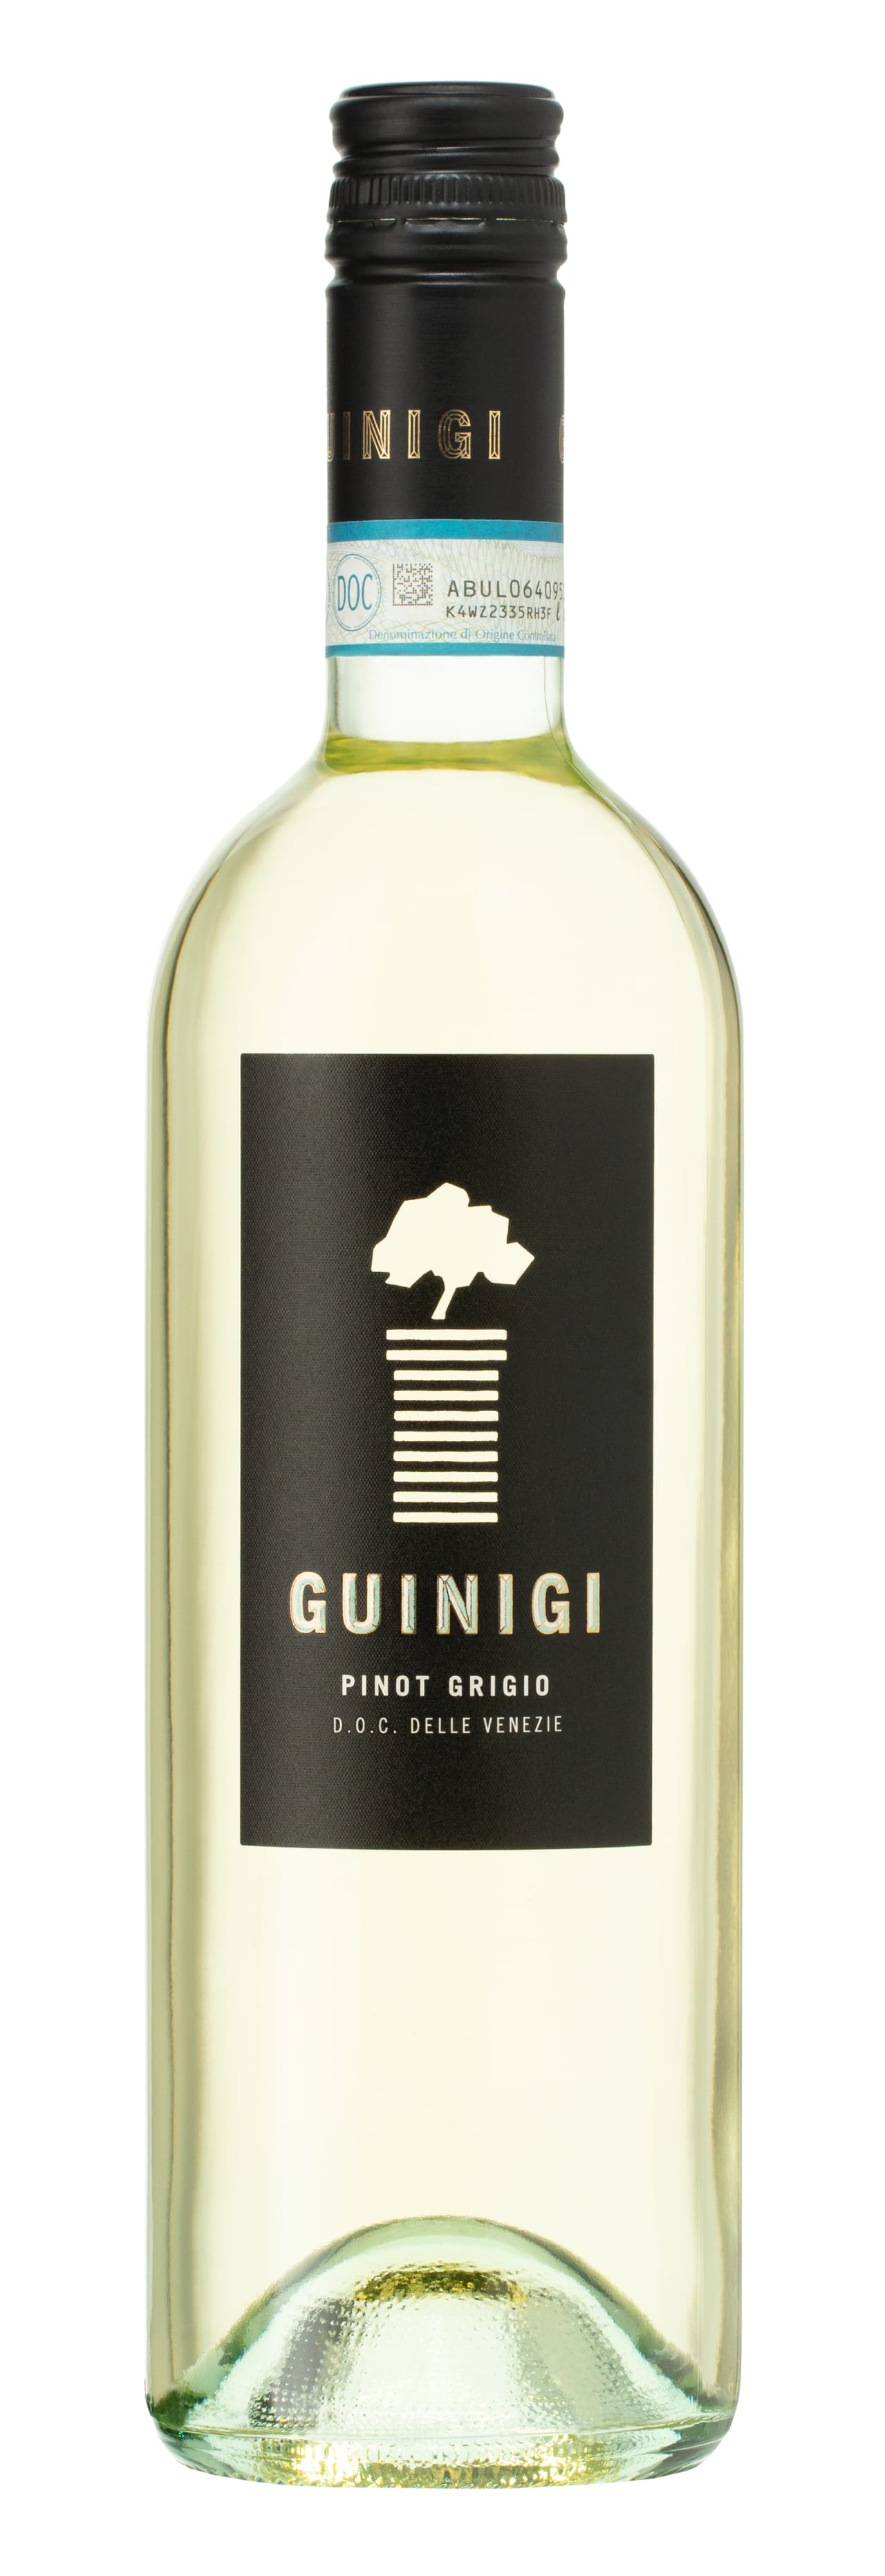 Guinigi Pinot Grigio 2019